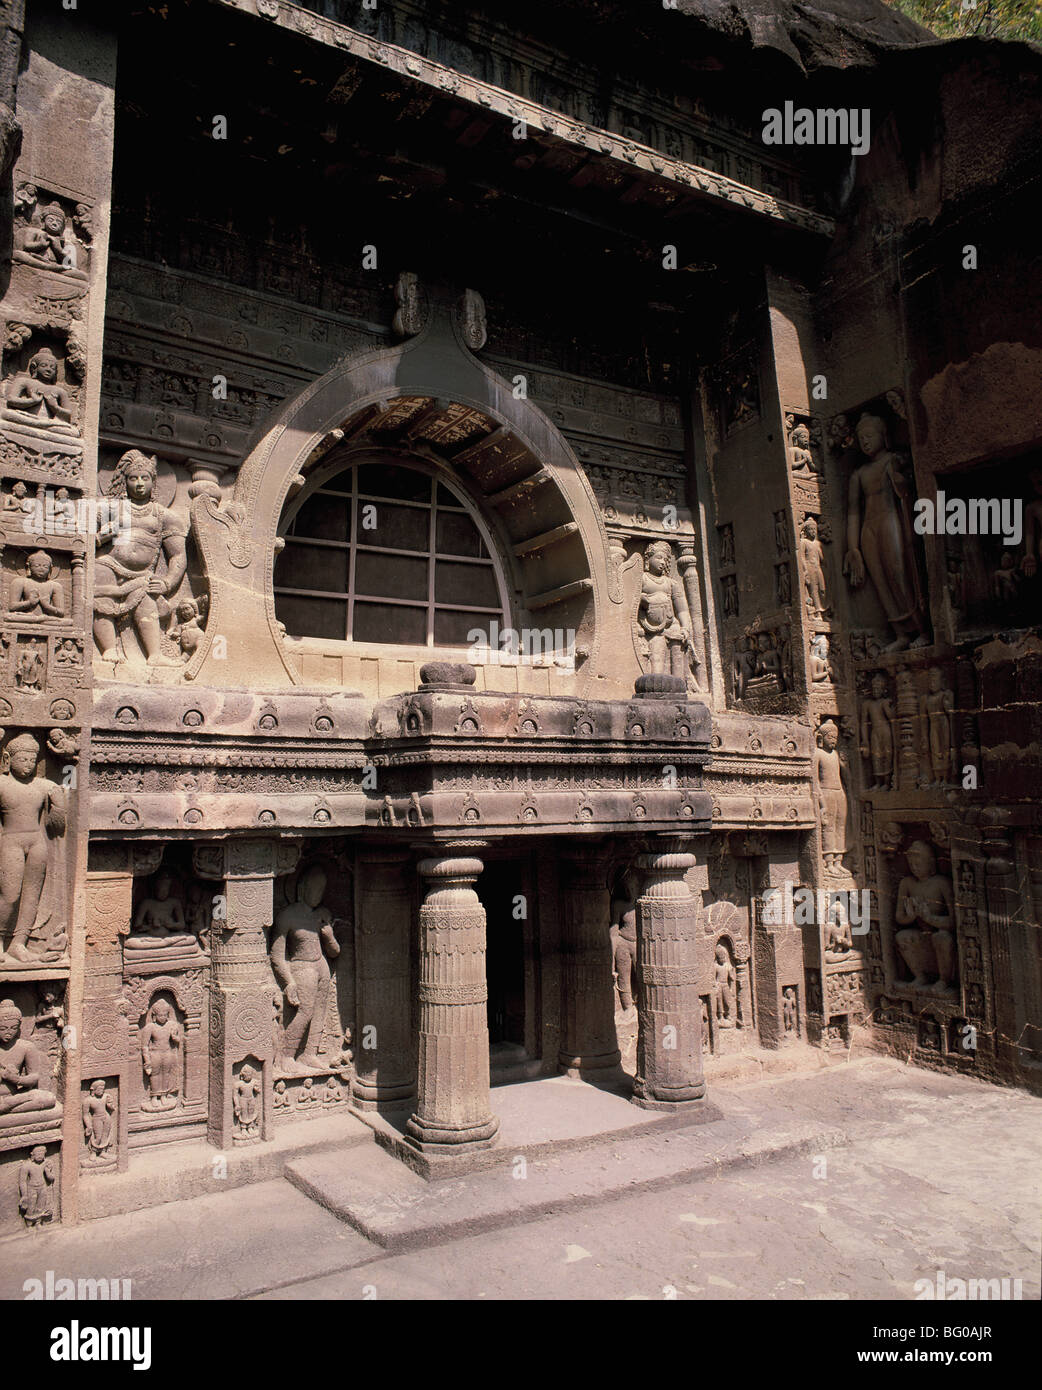 Buddhist Cave 19, Ajanta, UNESCO World Heritage Site, Maharashtra, India, Asia Stock Photo